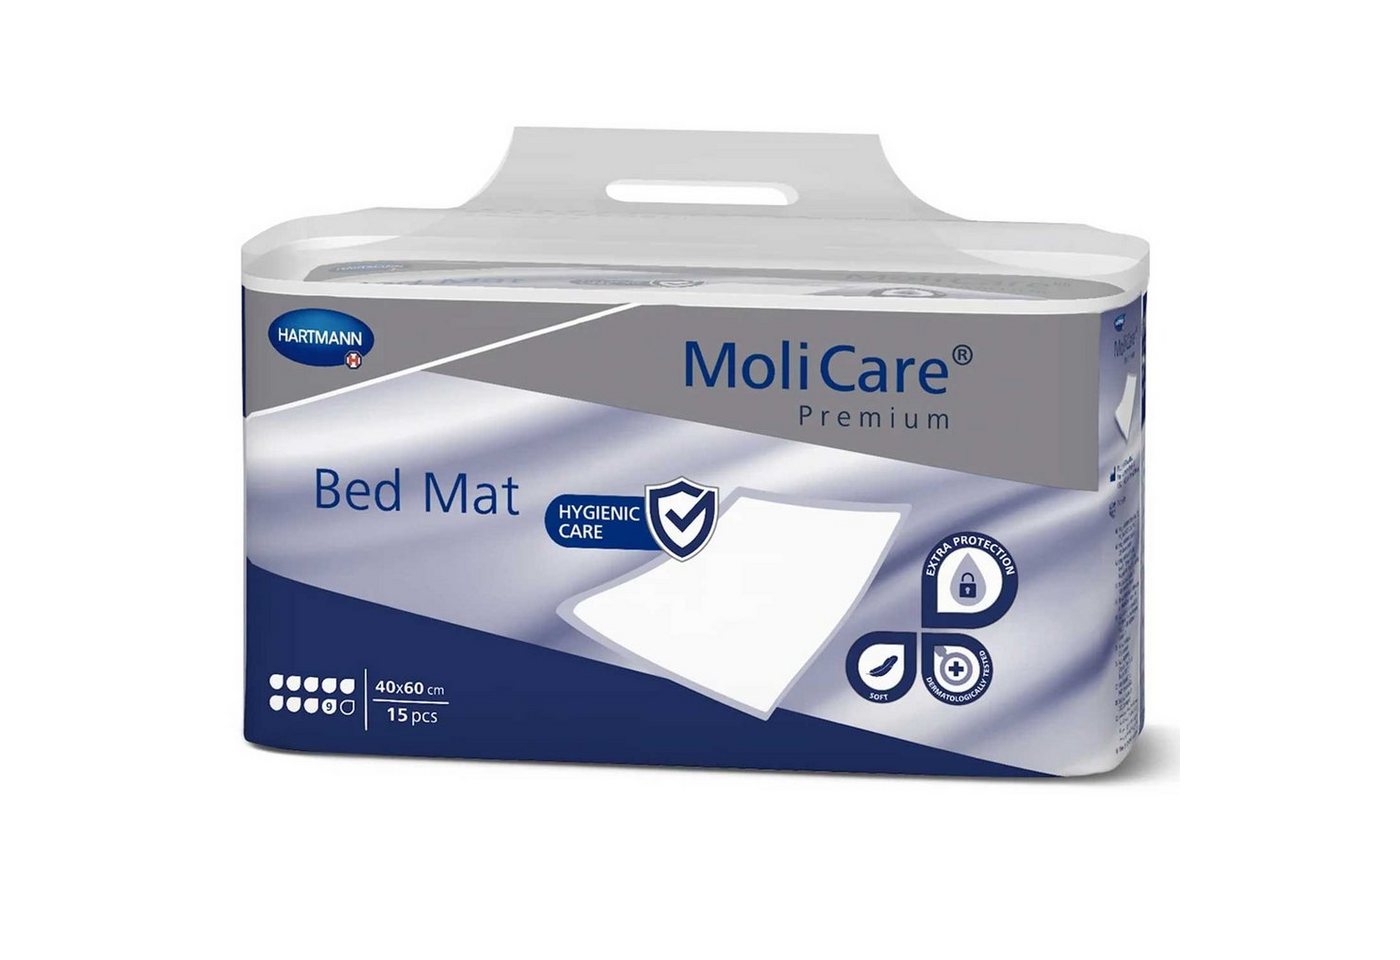 Inkontinenzauflage MoliCare® Premium Bed Mat 9 Tropfen Molicare, mit superabsorbierendem Polymer von Molicare